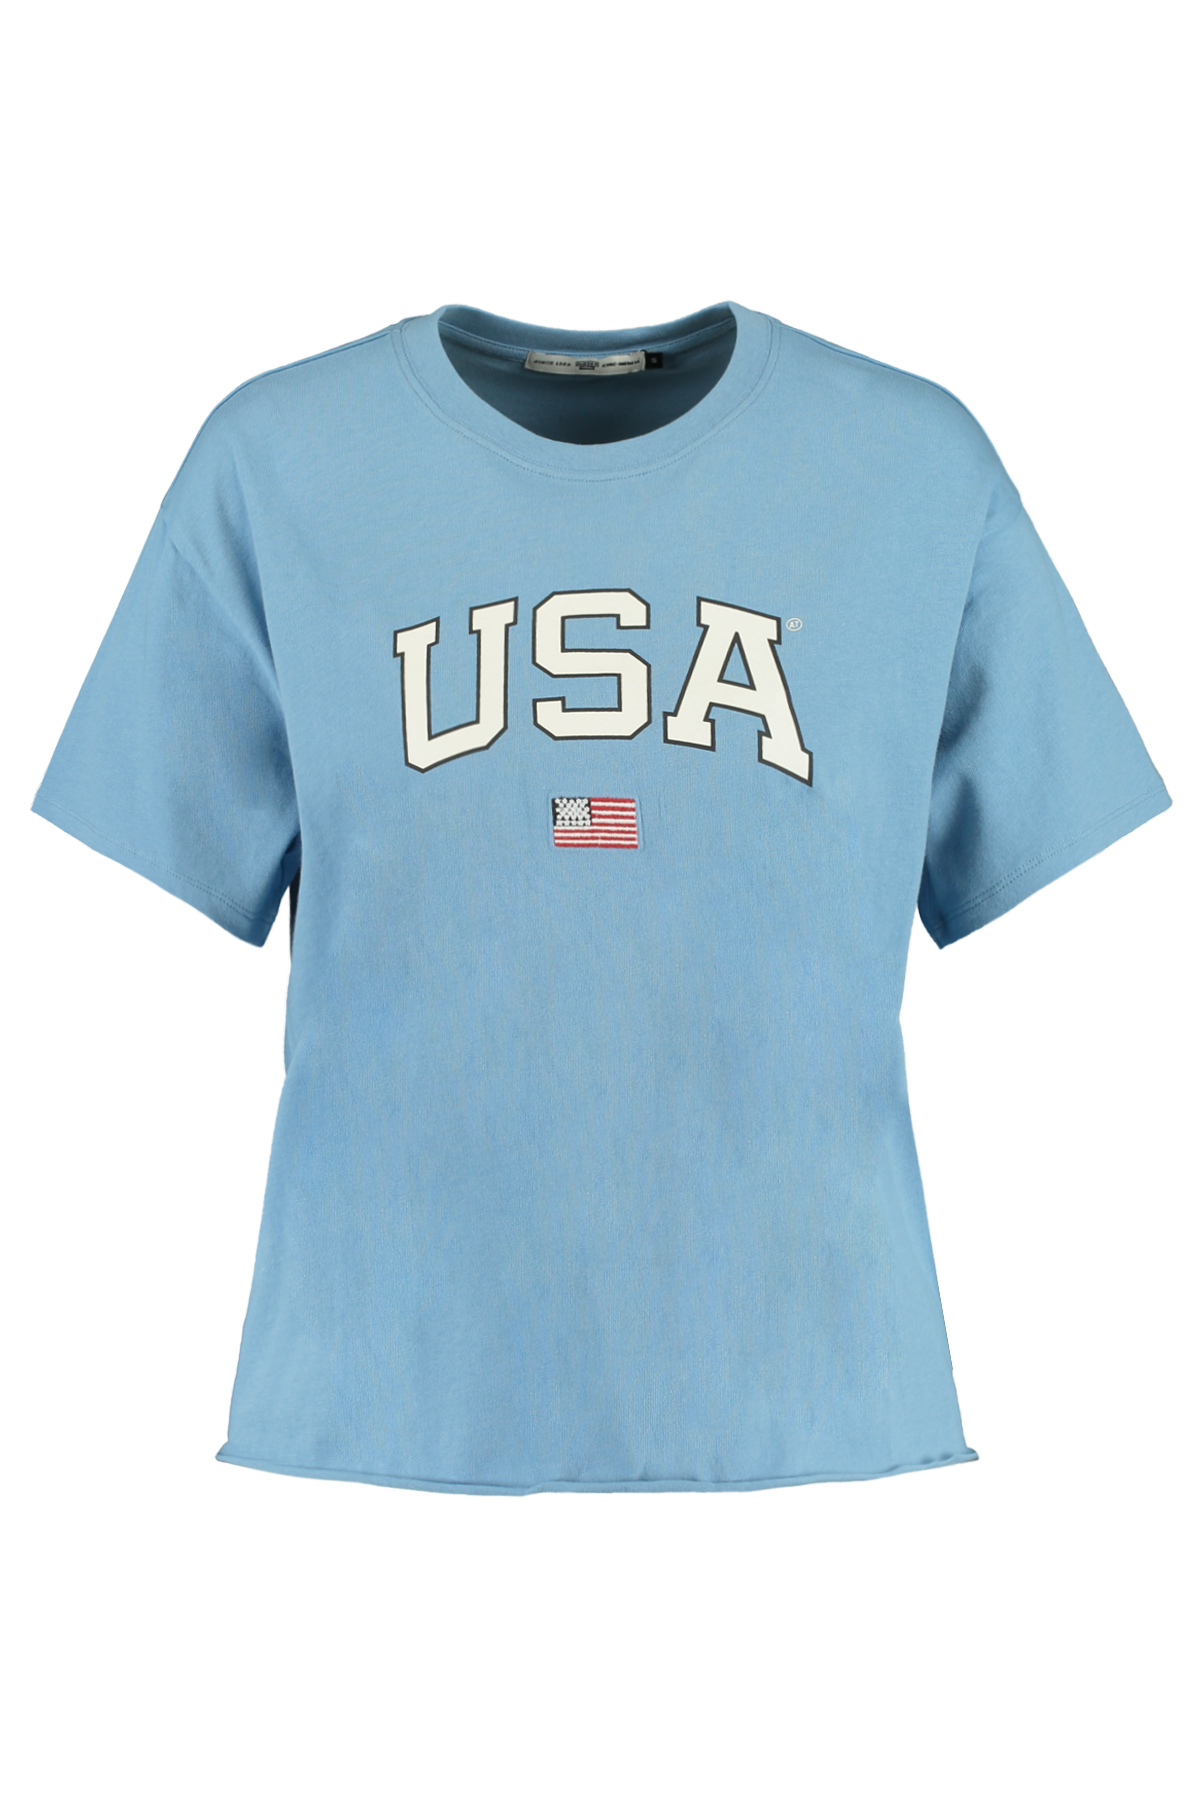 Women T-shirt USA text print Blue Buy Online